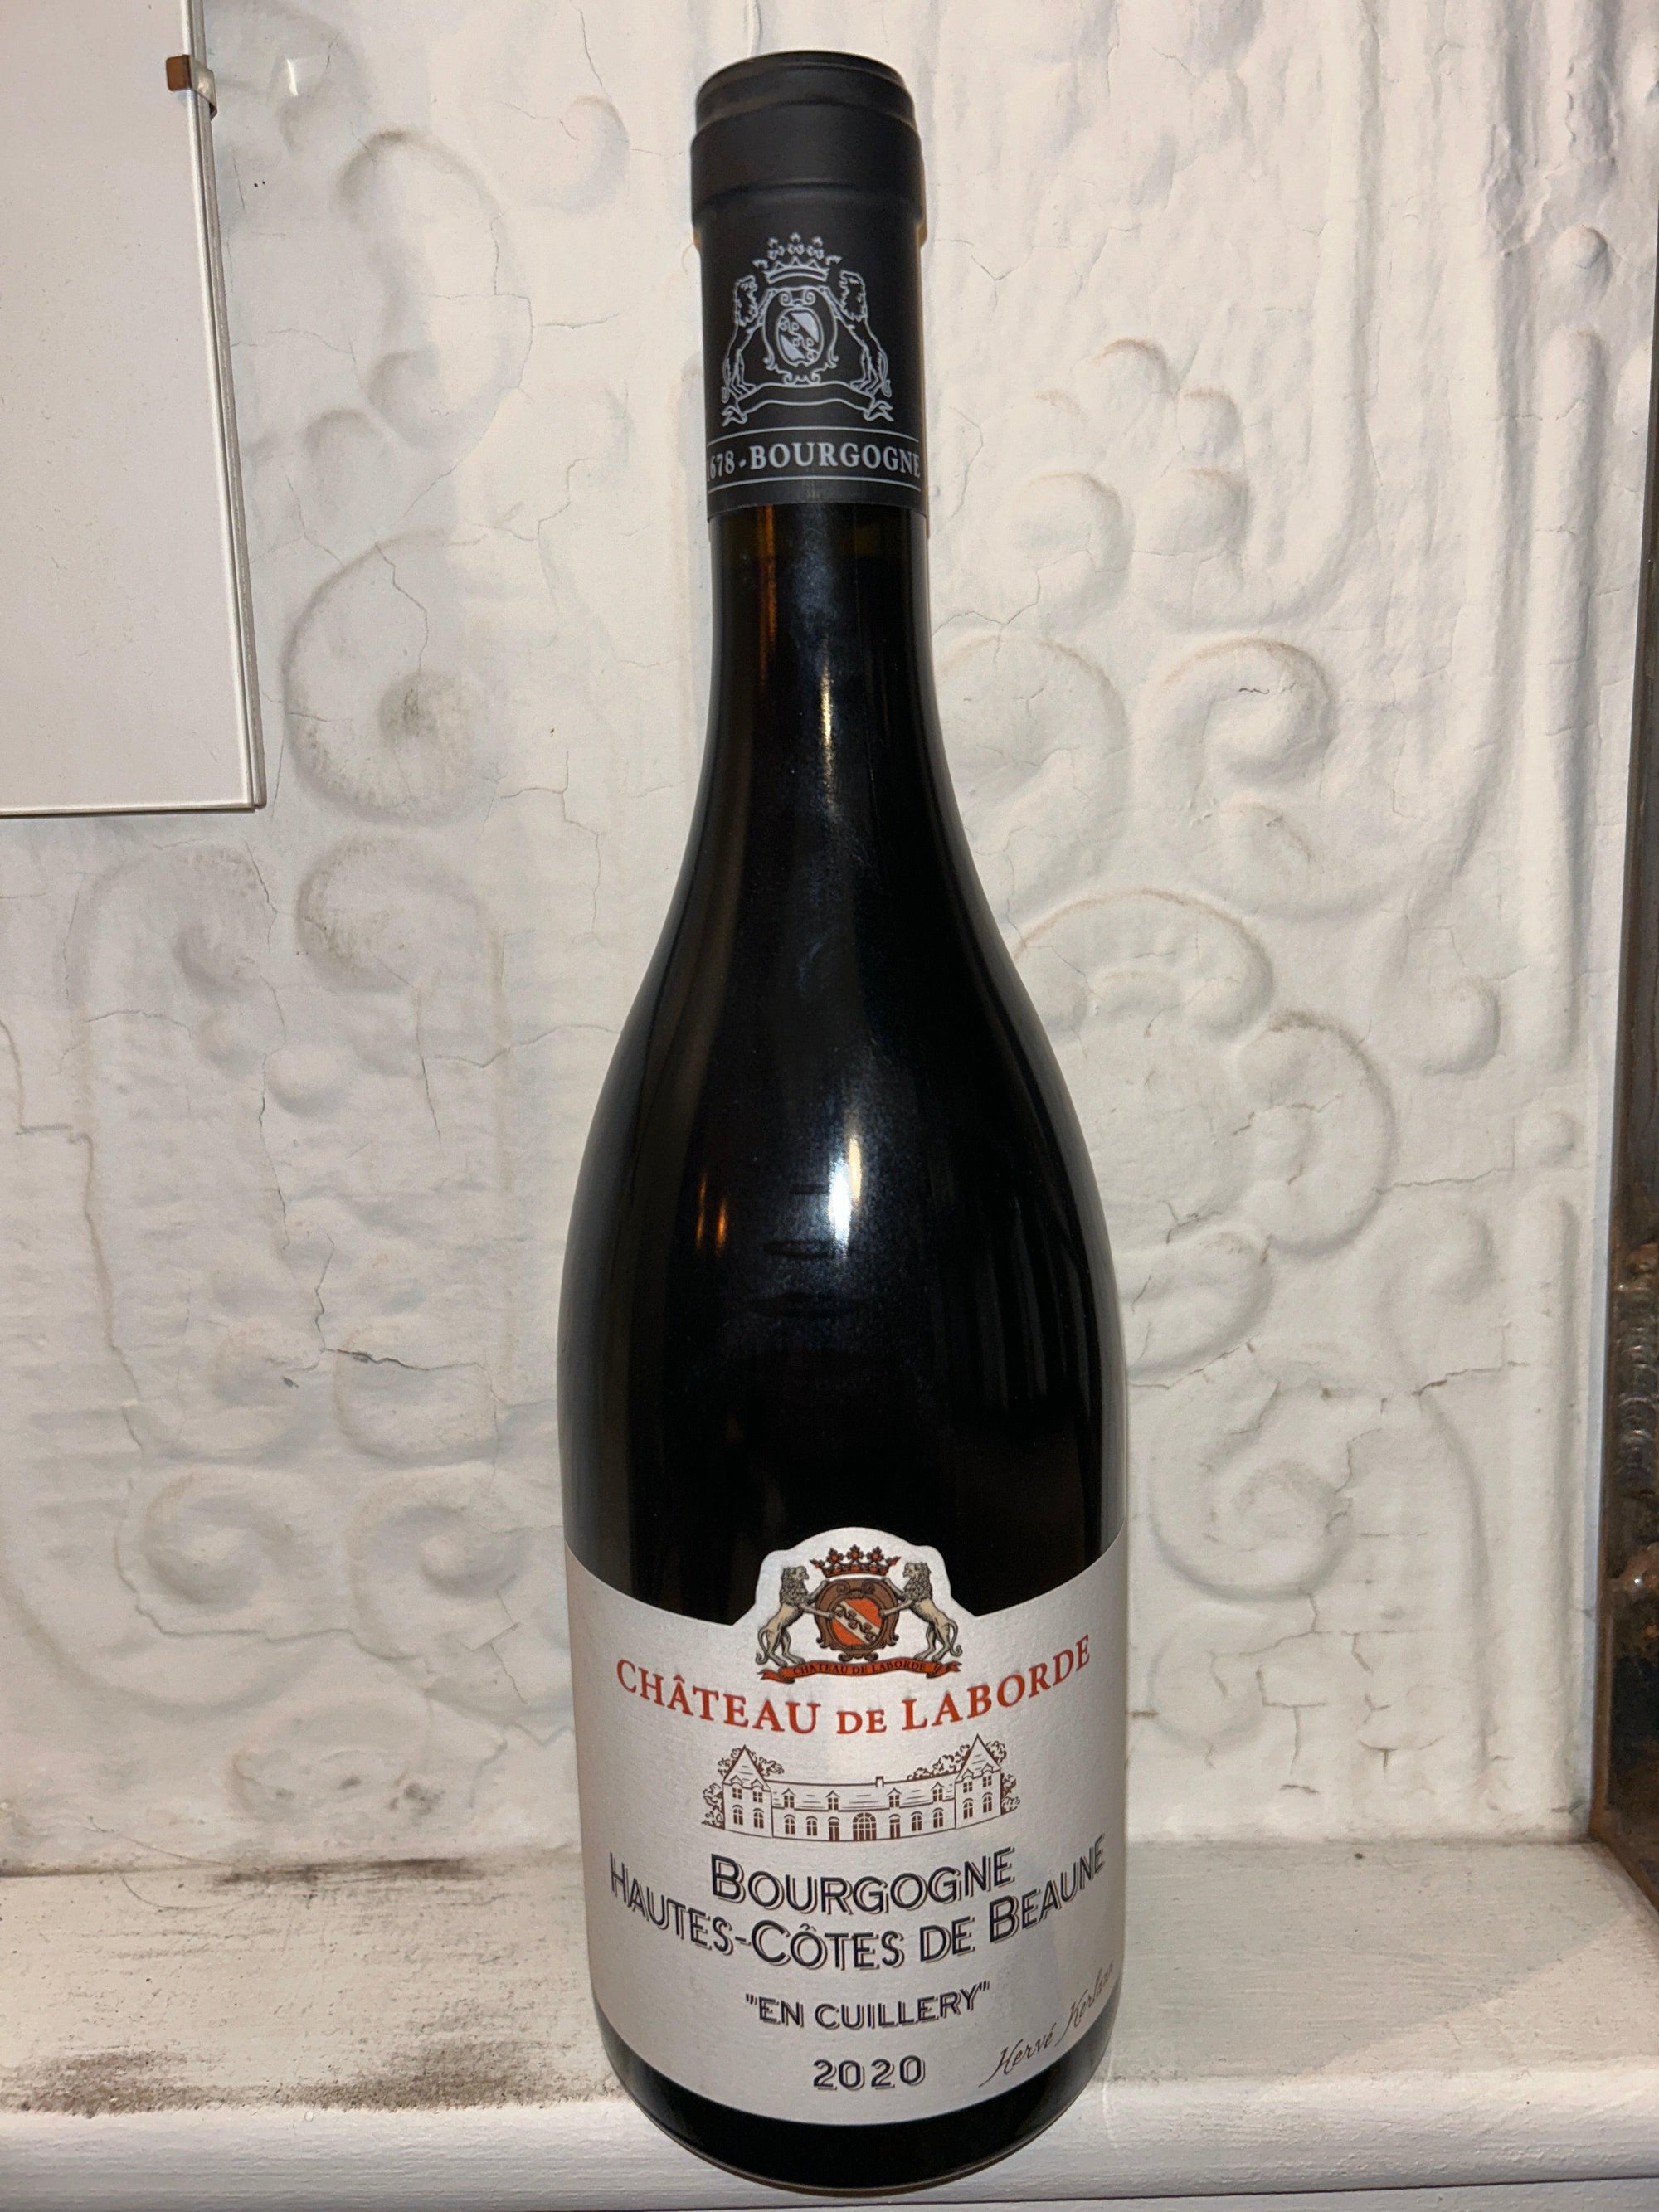 Pinot Noir En Cuillery, Chateau de Laborde 2020 (Burgundy, France)-Wine-Bibber & Bell